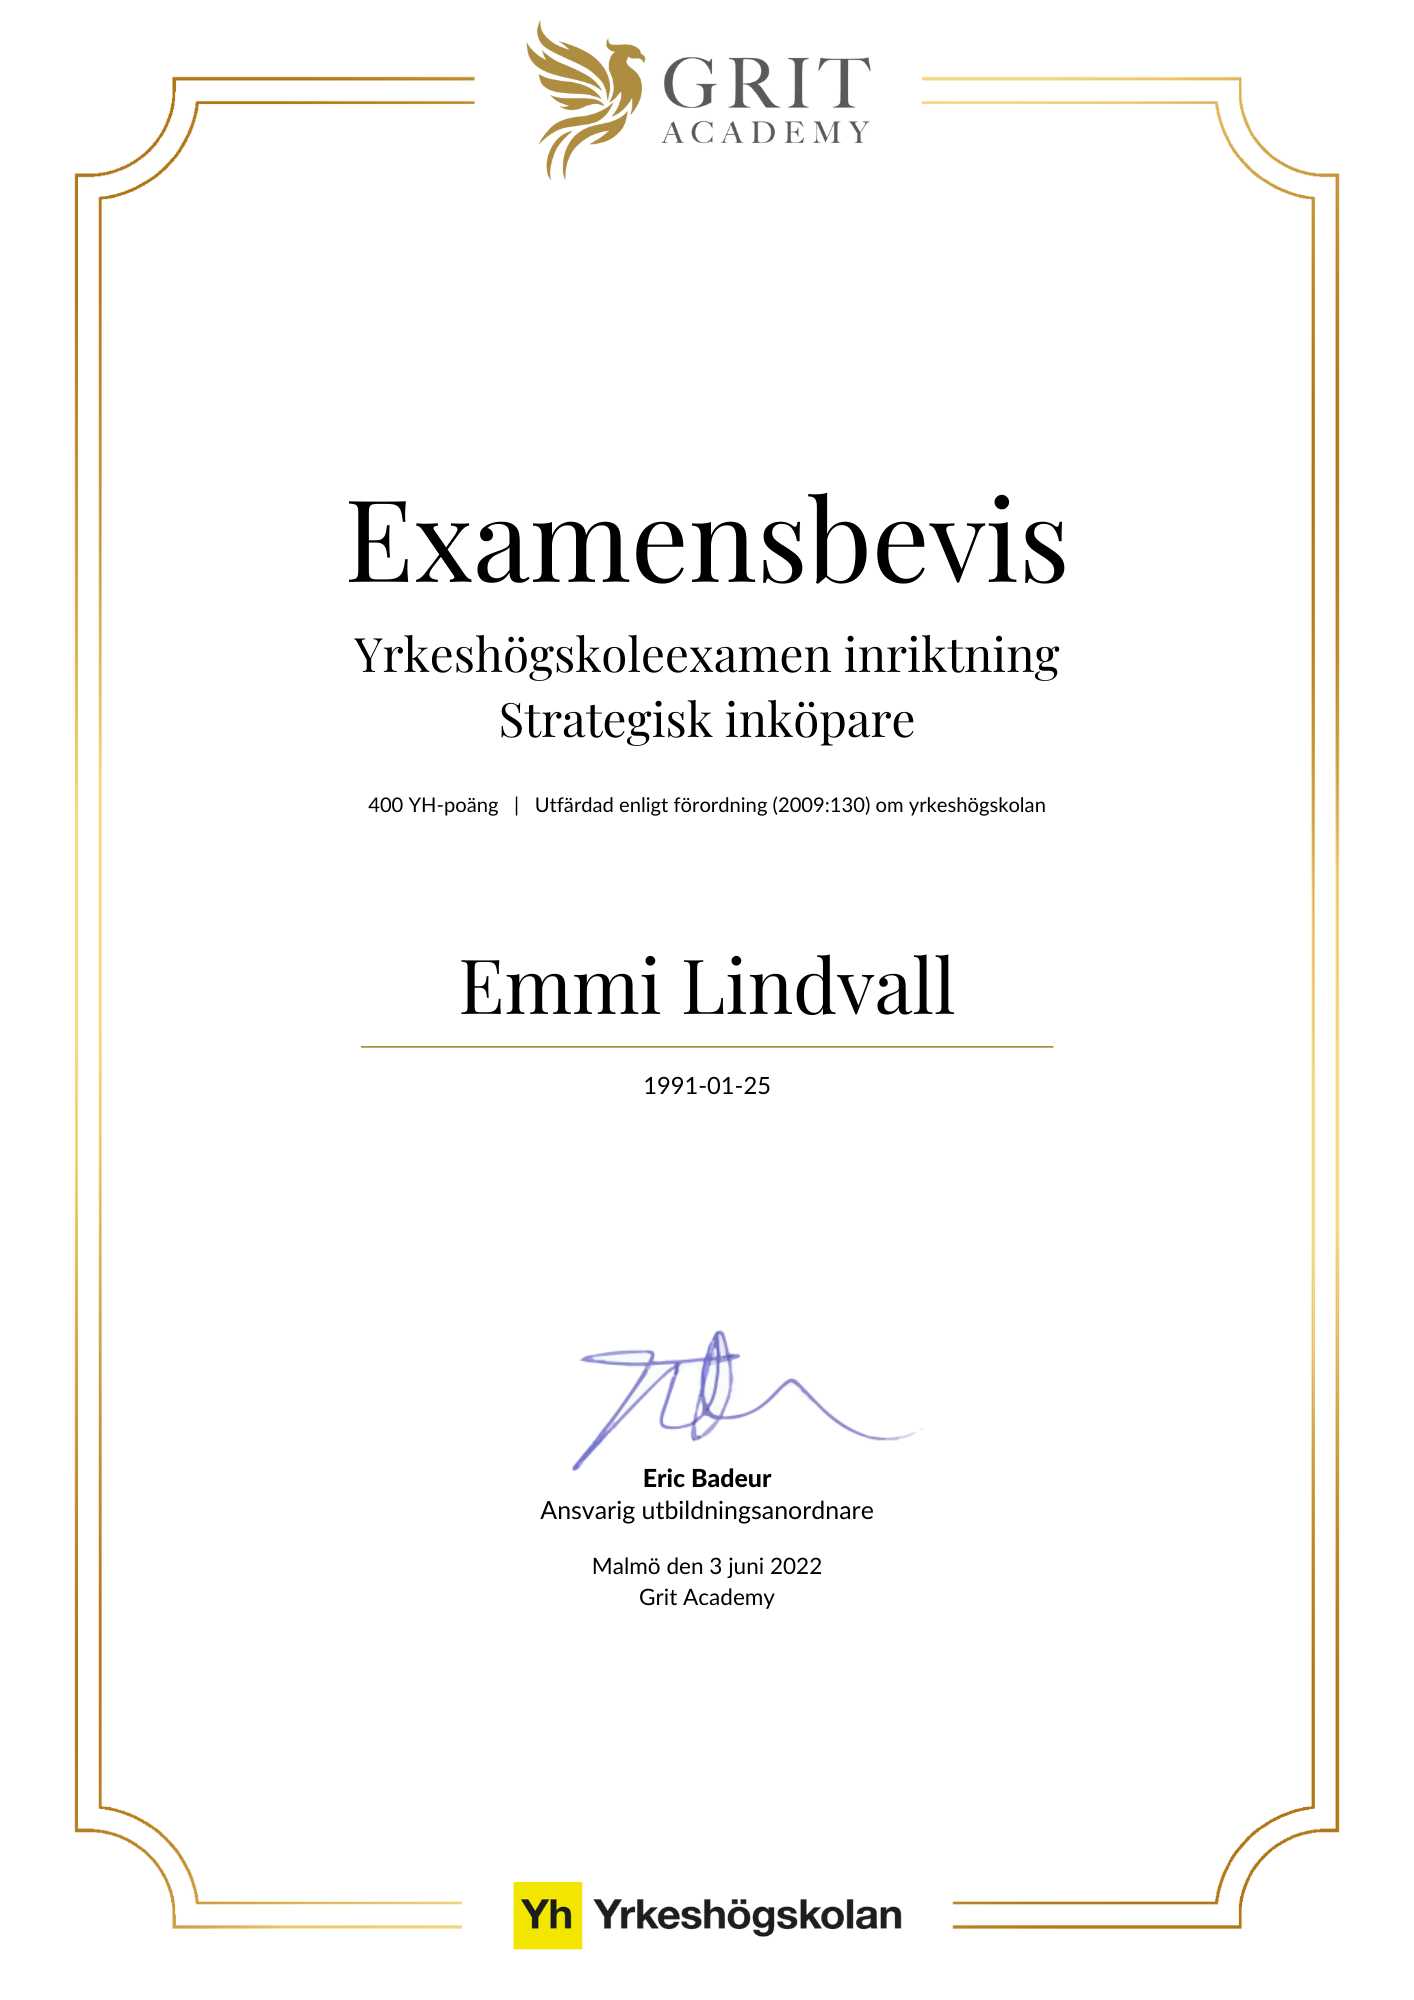 Examensbevis Emmi Lindvall - 1